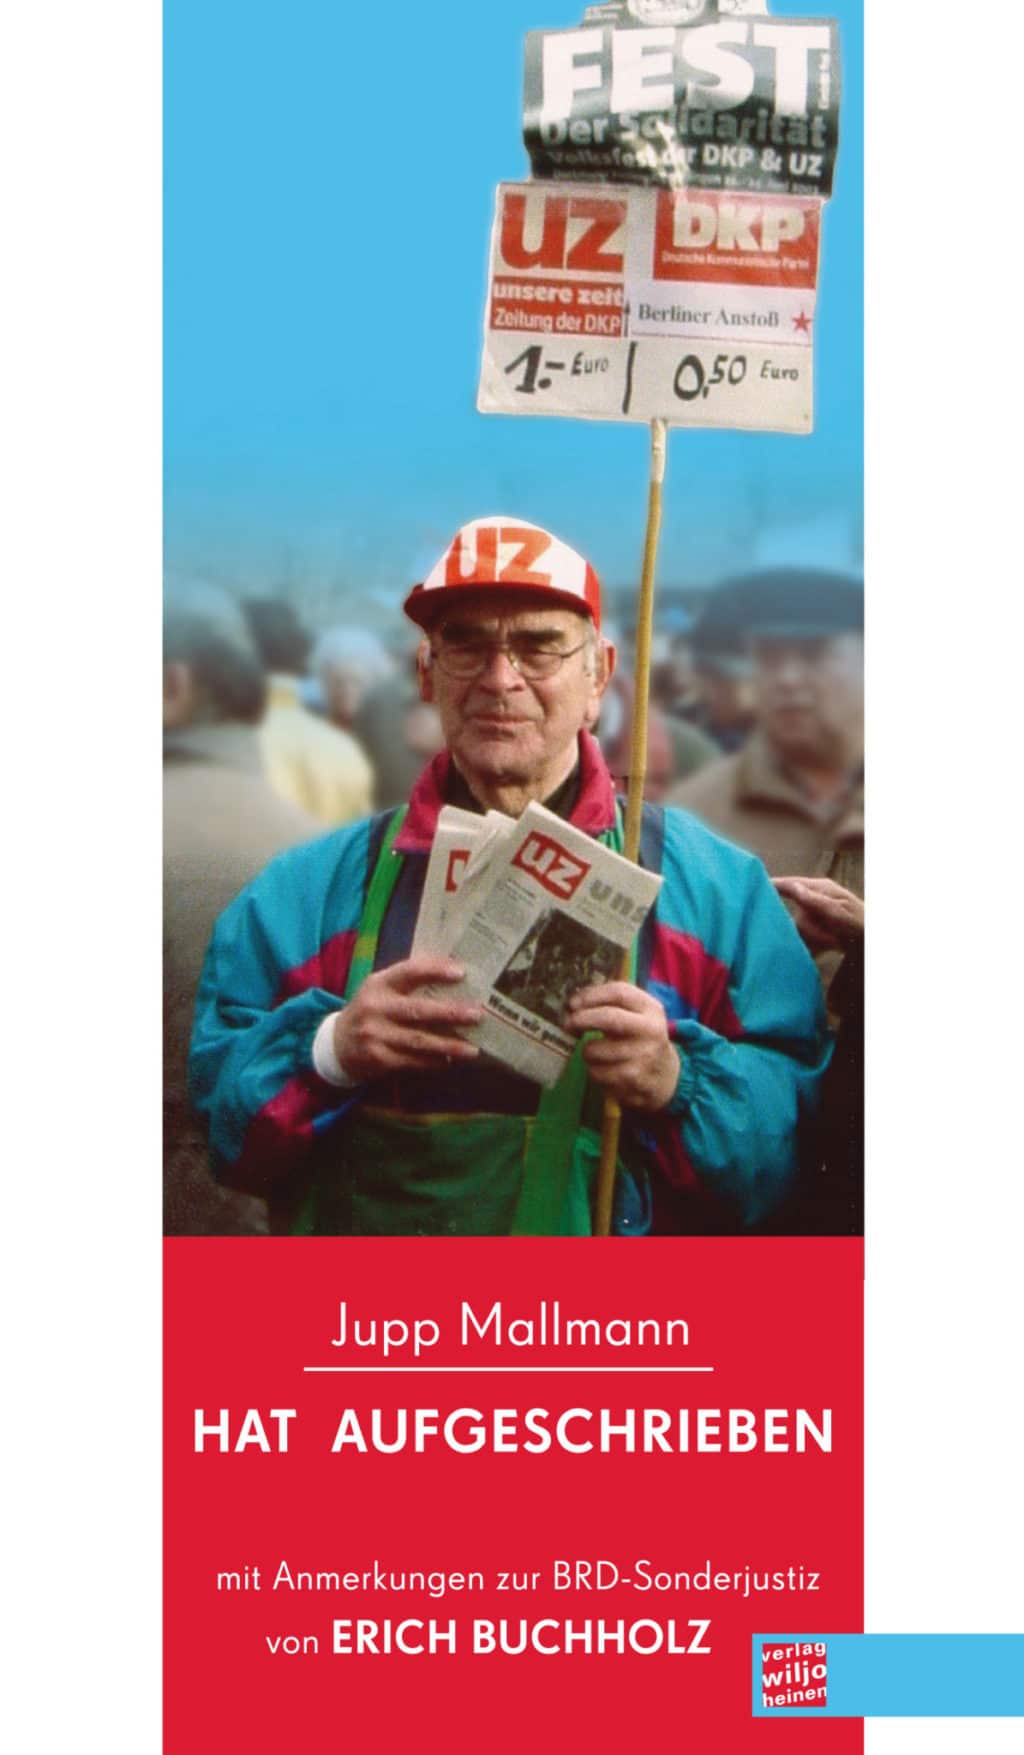 MallmannFront e1538610301972 Progressive Literatur